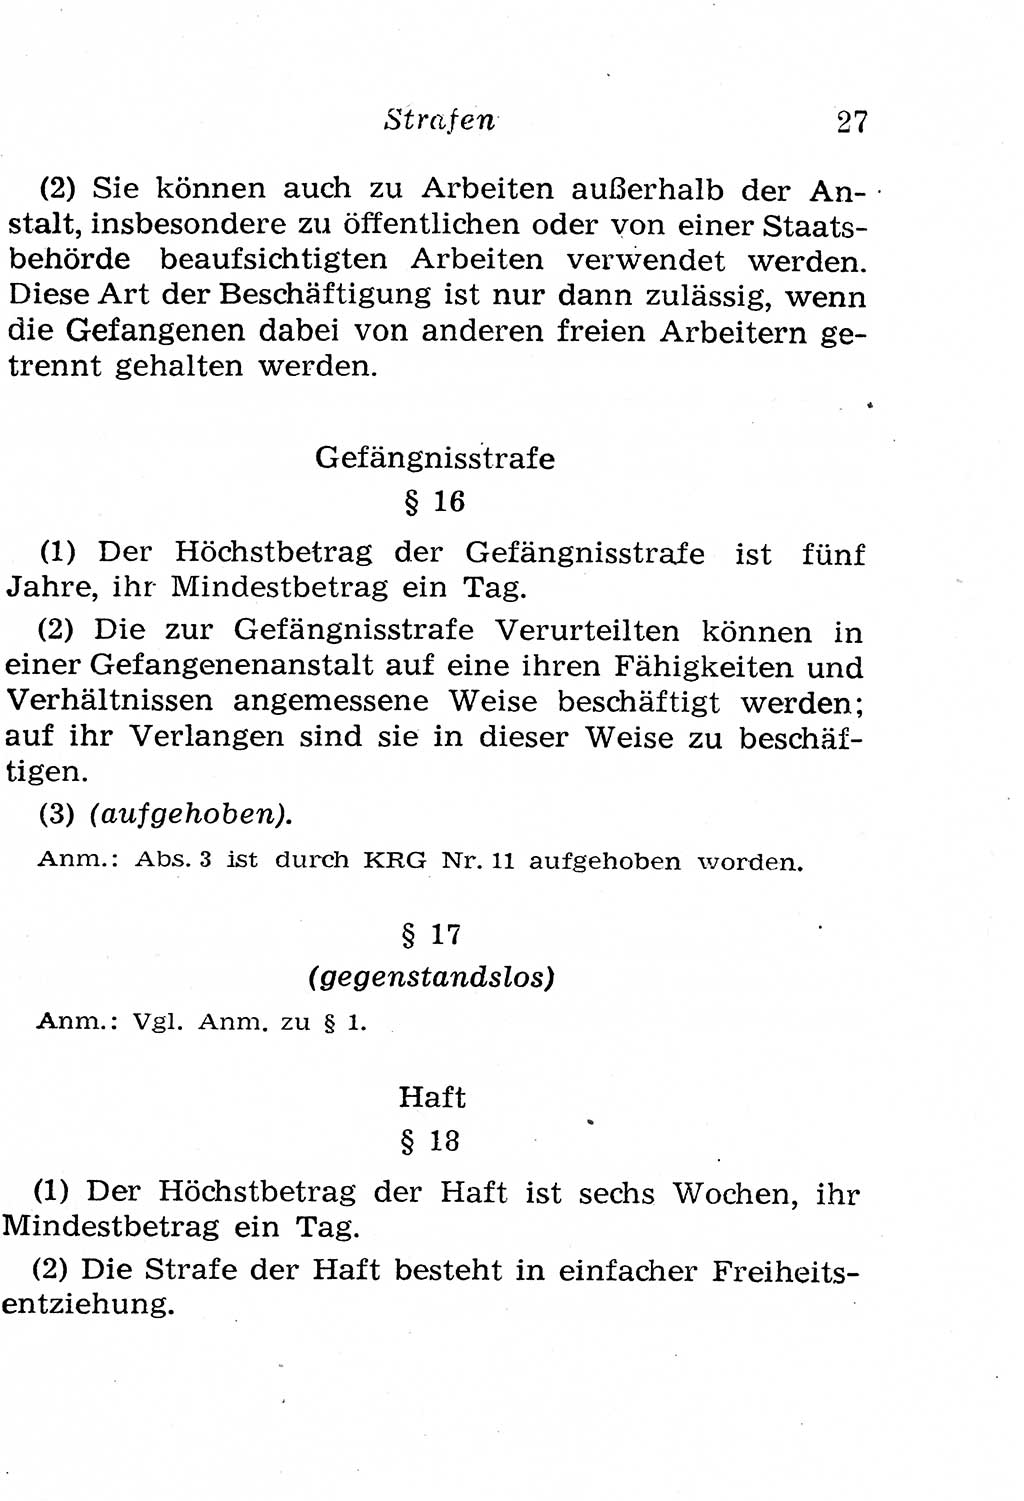 Strafgesetzbuch (StGB) und andere Strafgesetze [Deutsche Demokratische Republik (DDR)] 1958, Seite 27 (StGB Strafges. DDR 1958, S. 27)